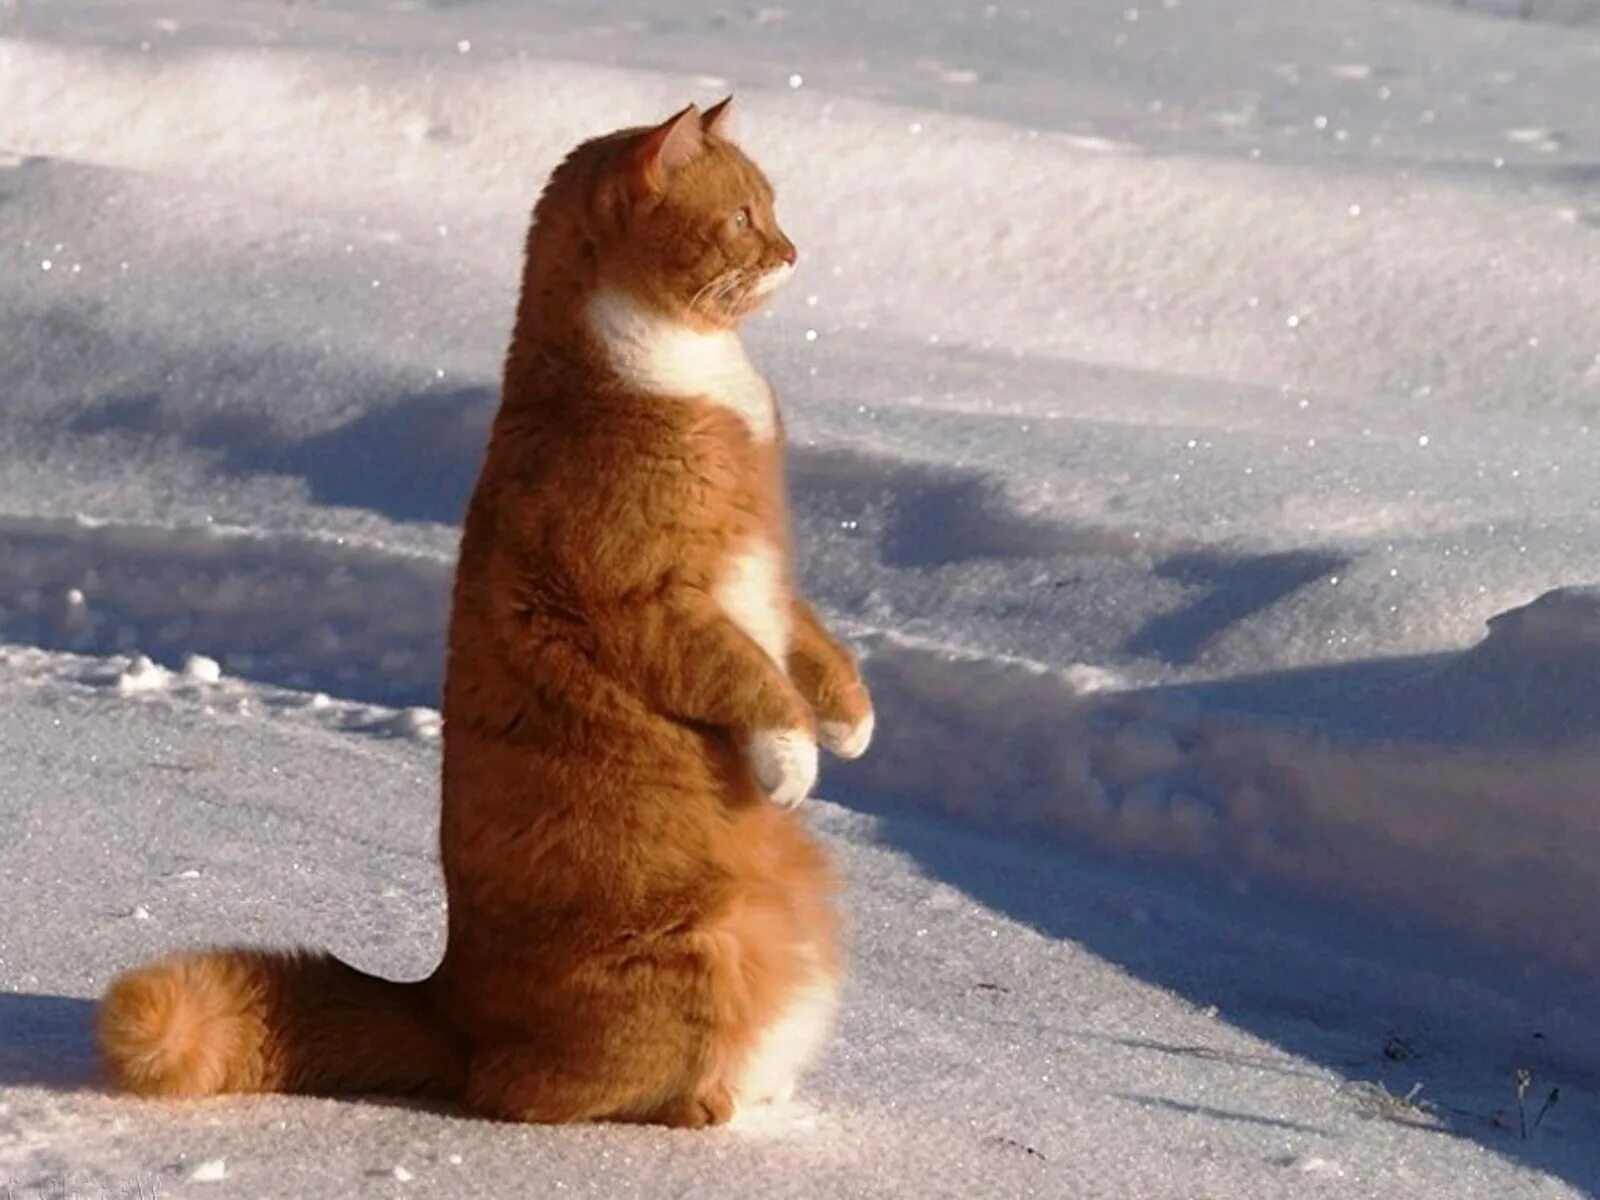 Снежок пришел. Кот в снегу. Рыжий кот идет по снегу.